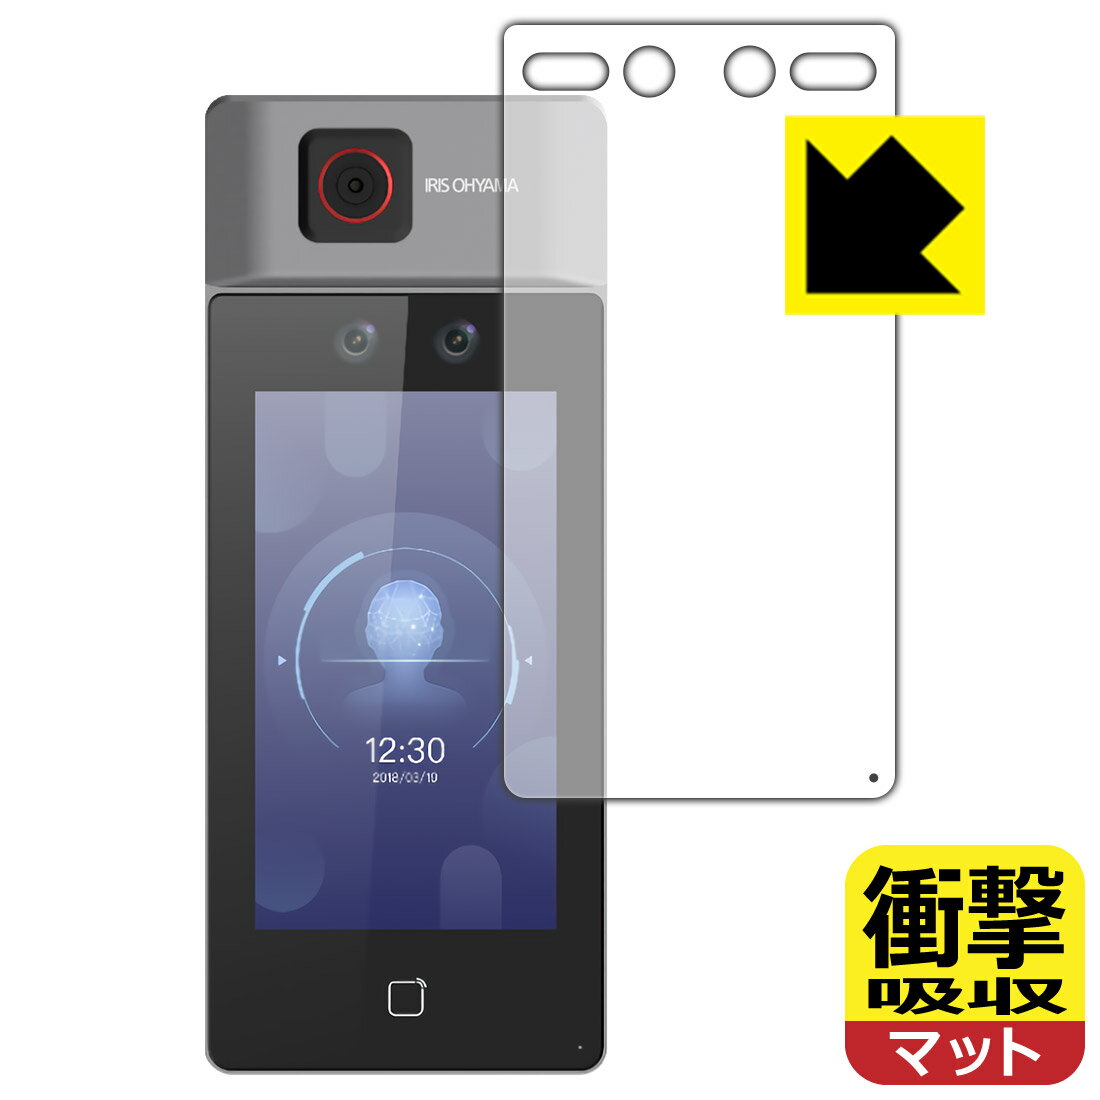 衝撃吸収保護フィルム 顔認証型AIサーマルカメラ IRC-F6713SG 用 日本製 自社製造直販